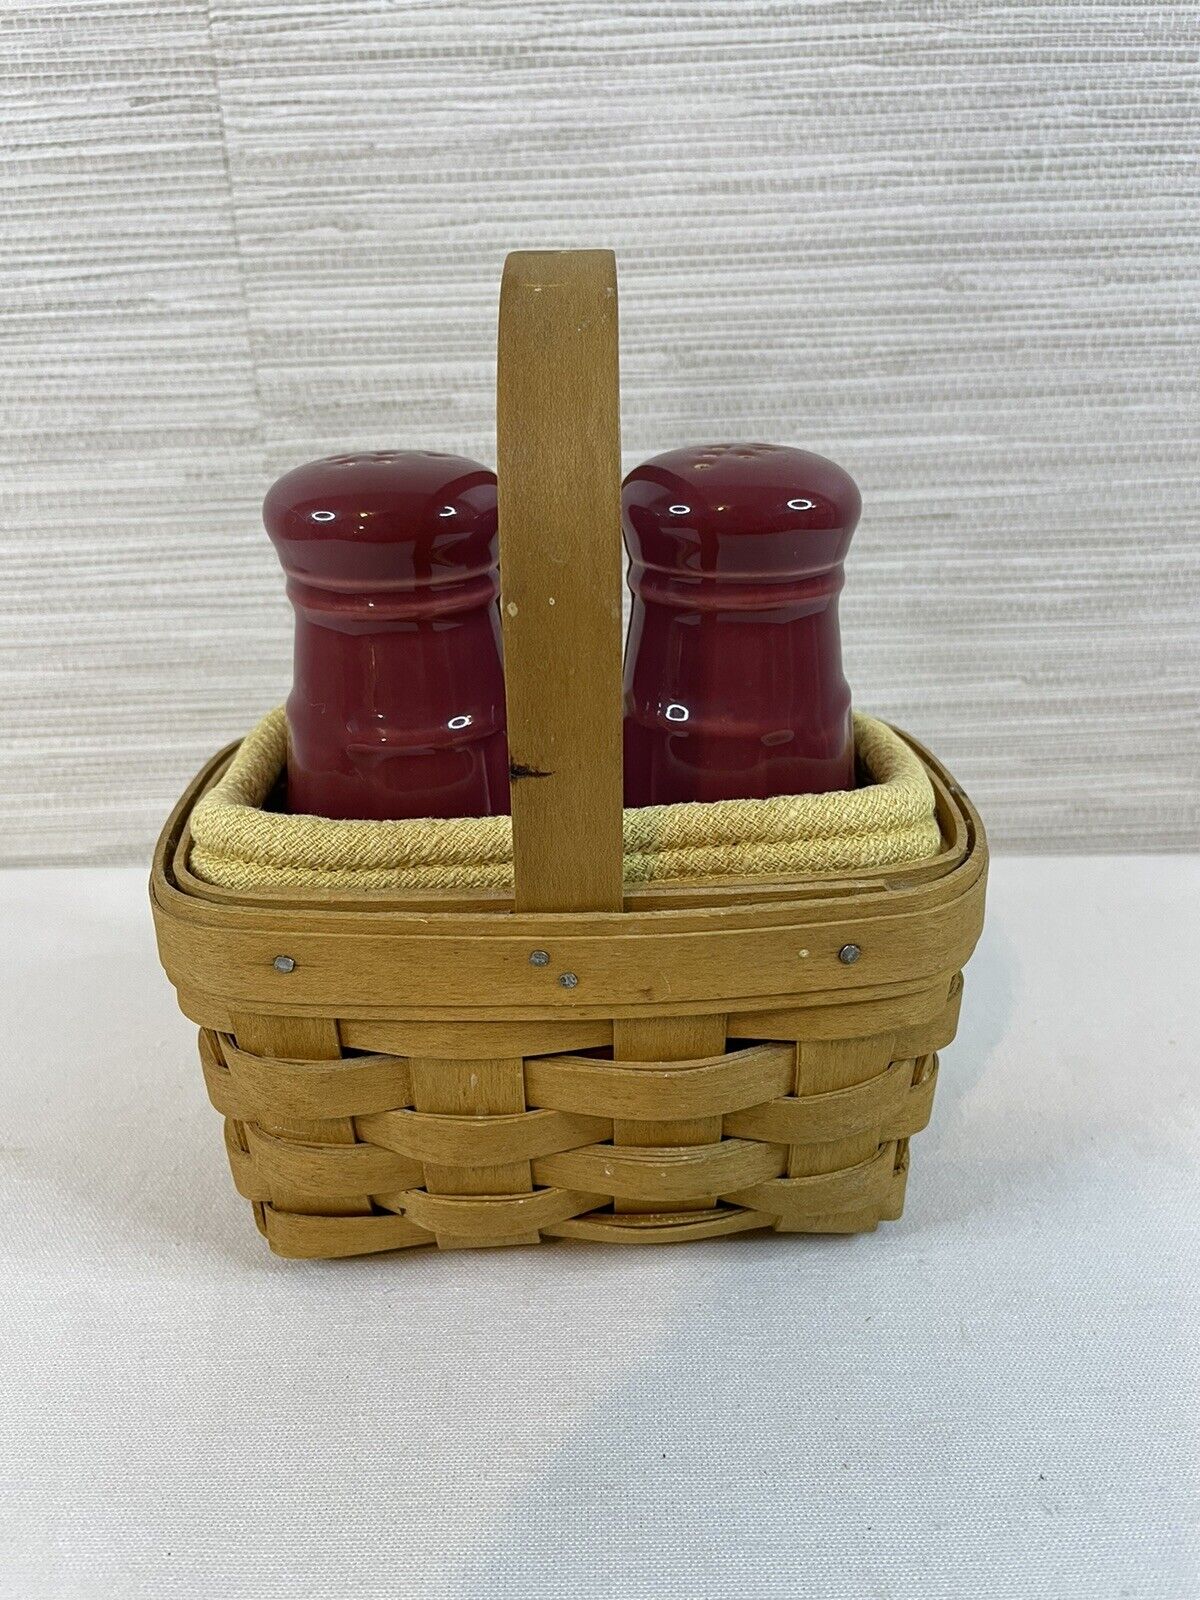 Longaberger pottery salt & pepper shakers paprika red with basket holder